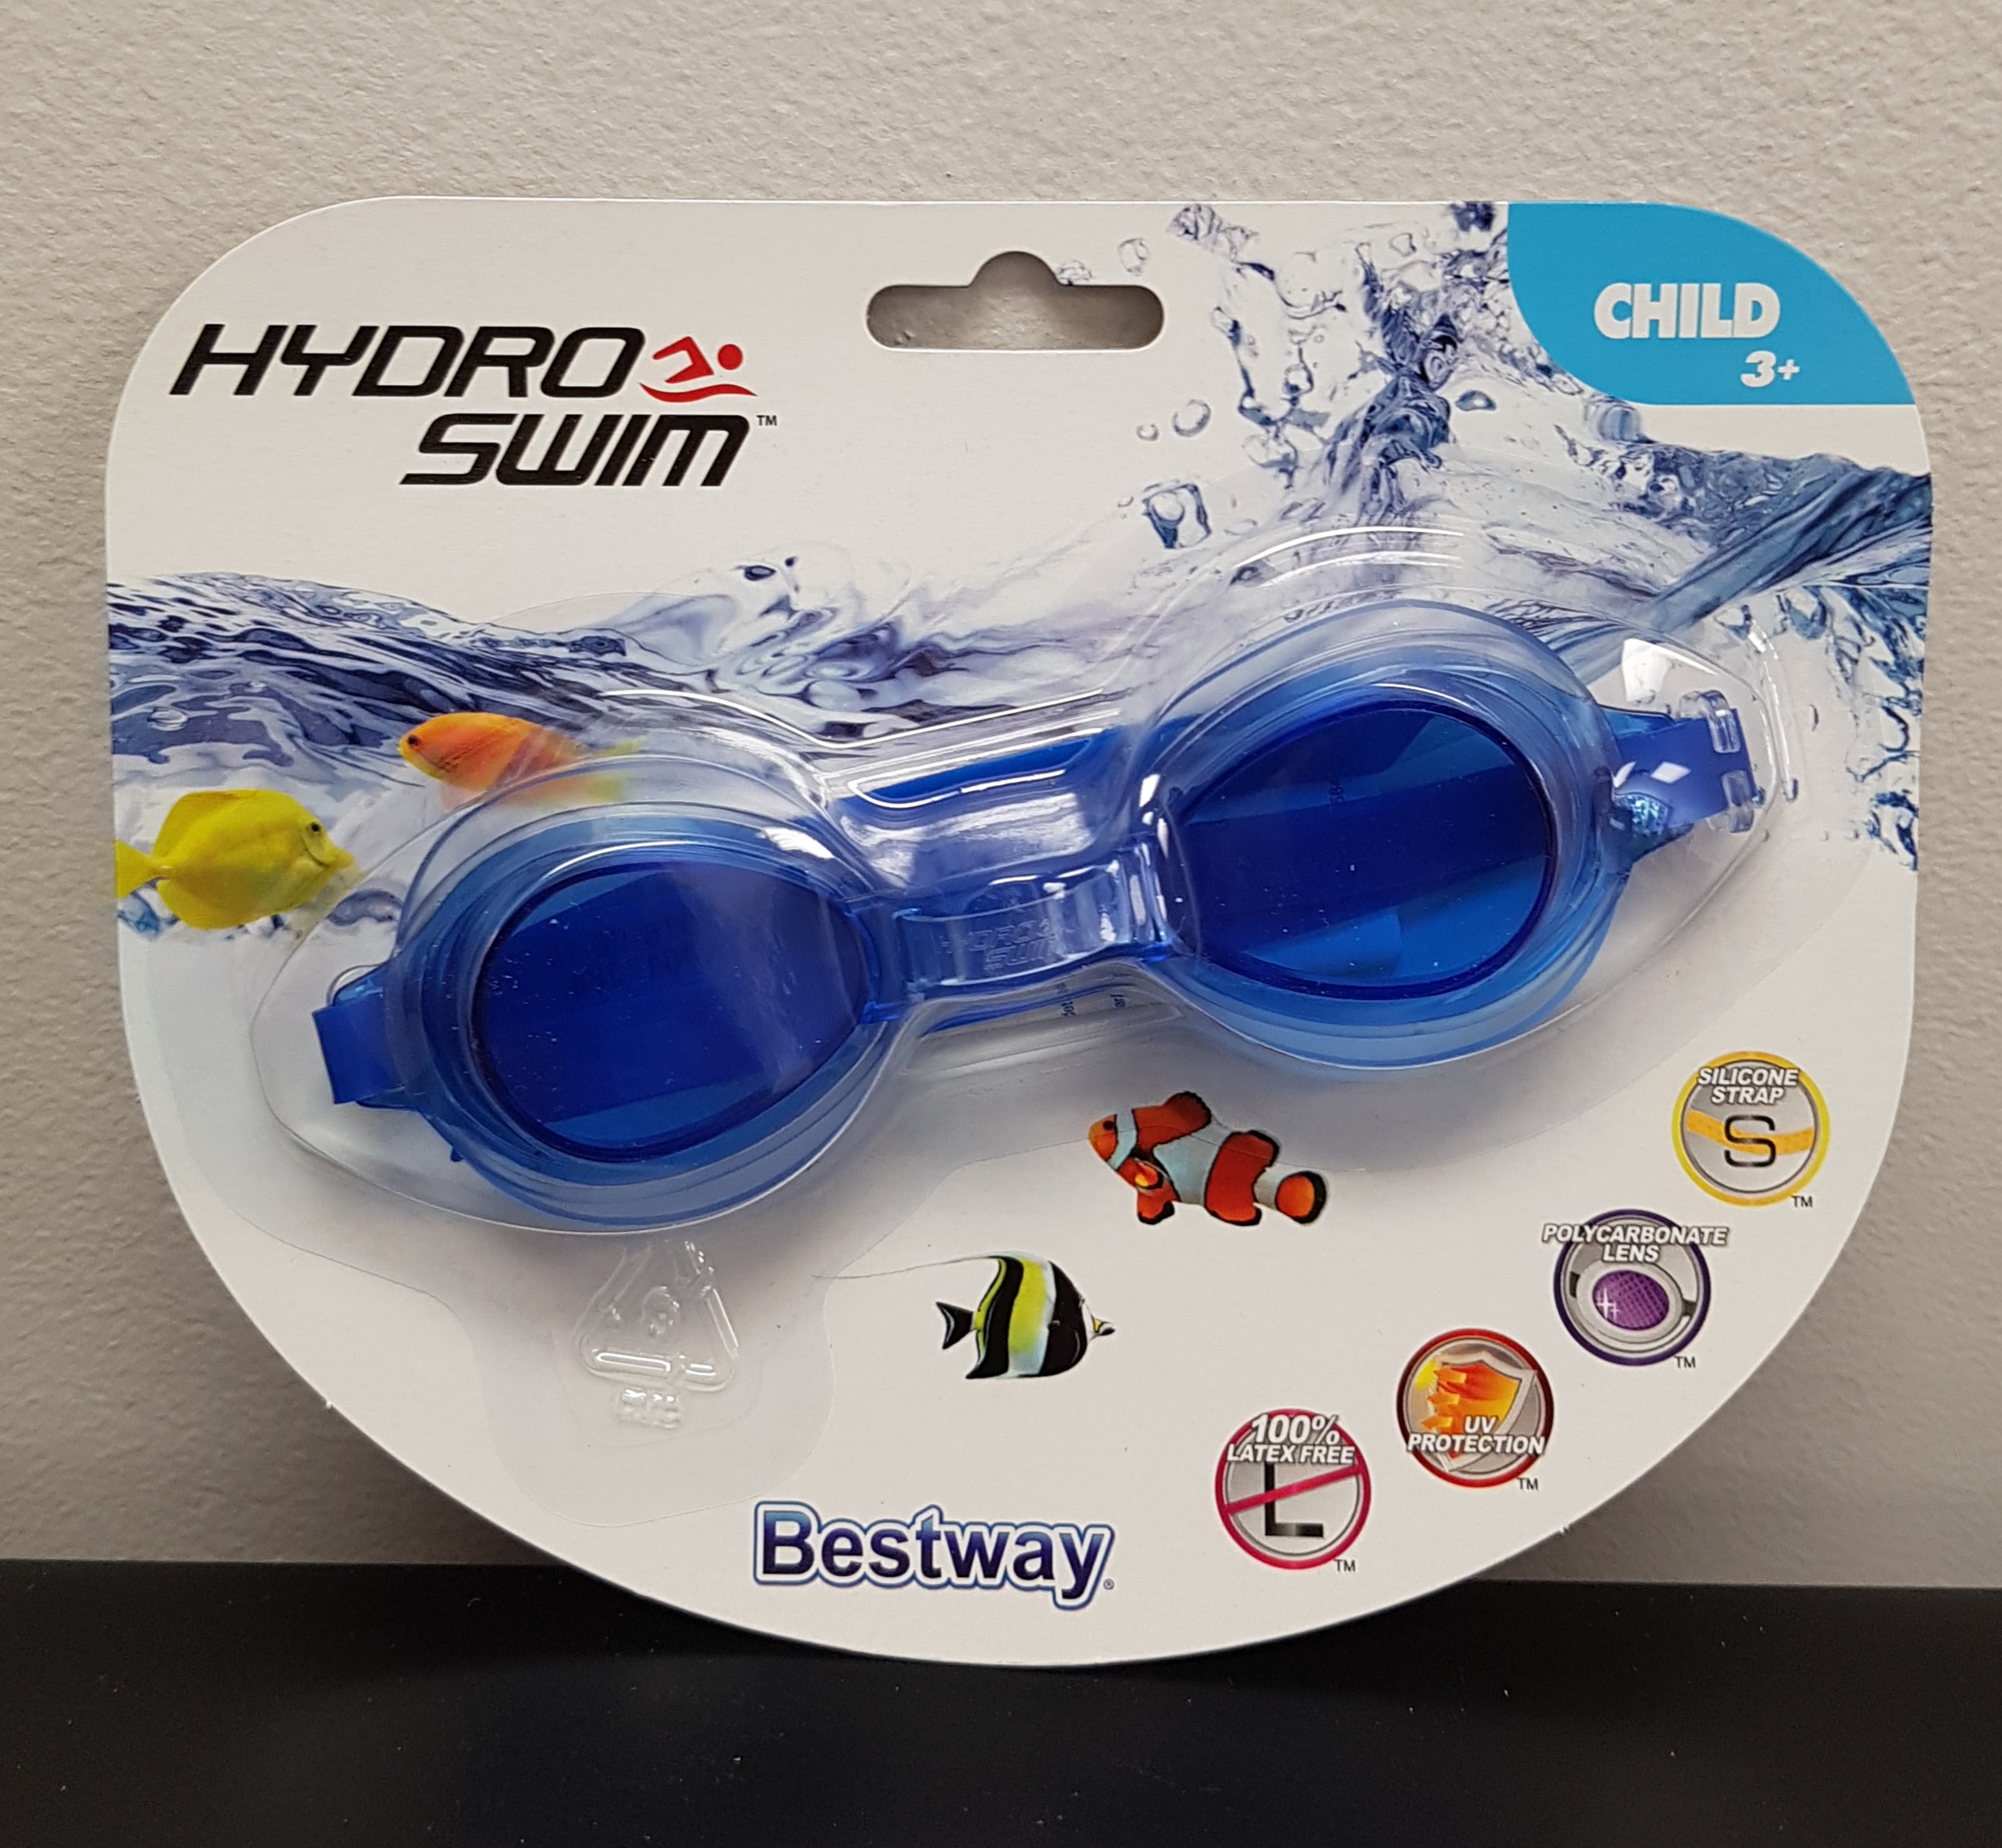 Hydro Swim Goggles - Child 3+ | Aldergrove General Store